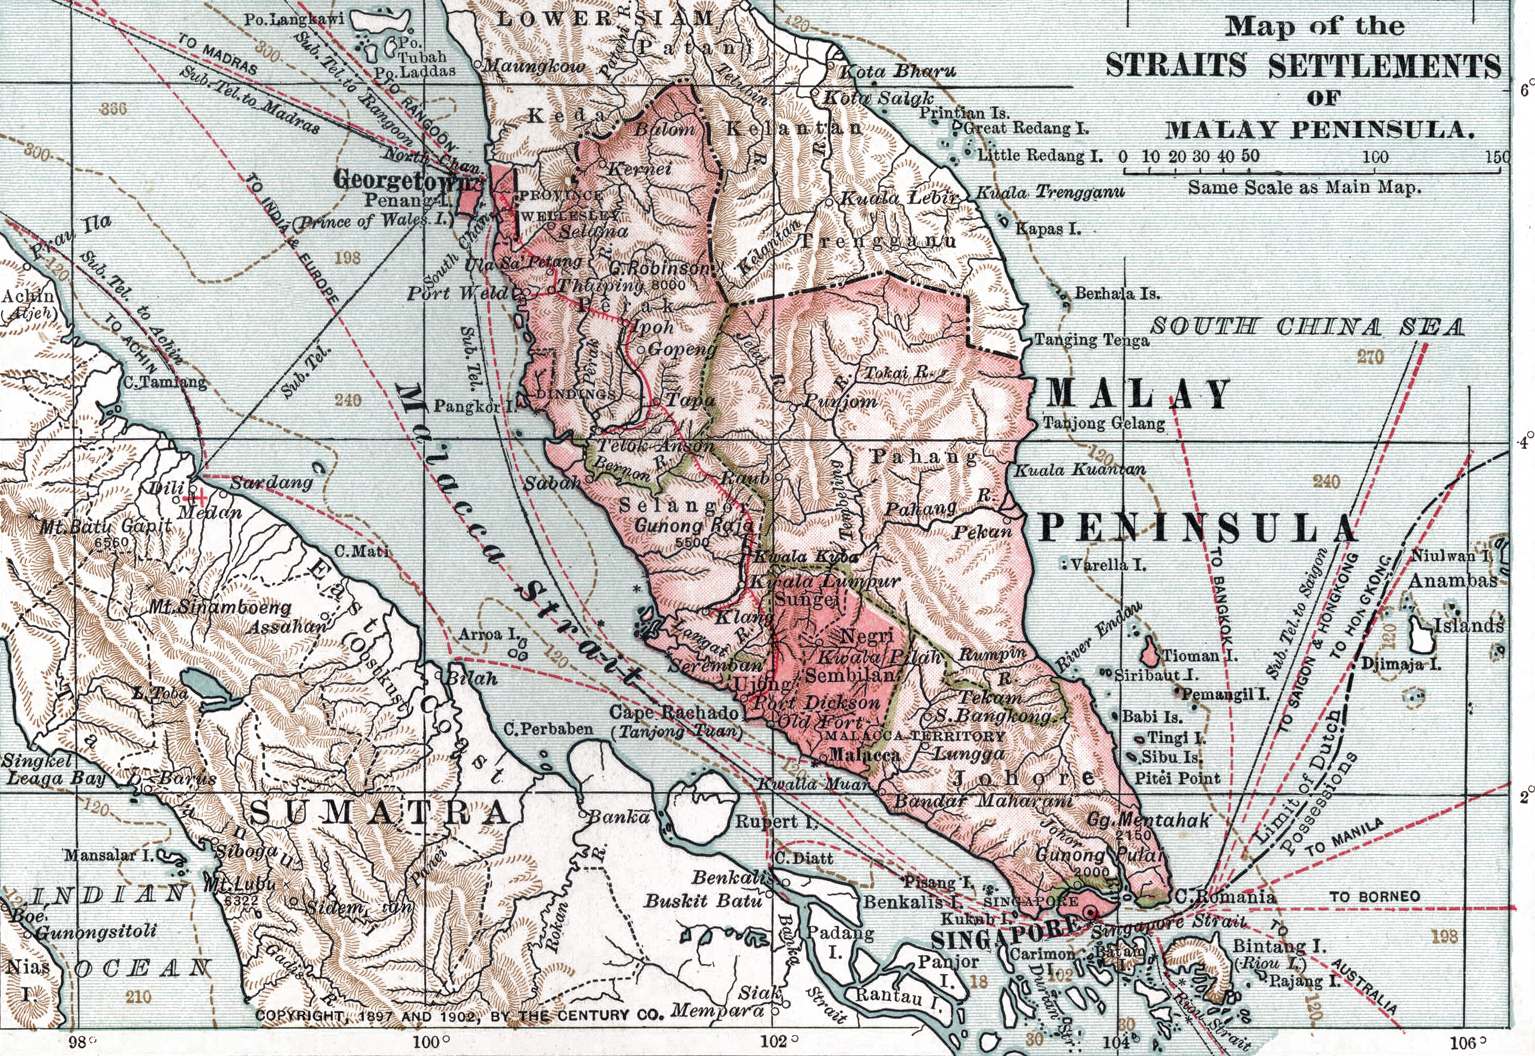 Malasia peninsular